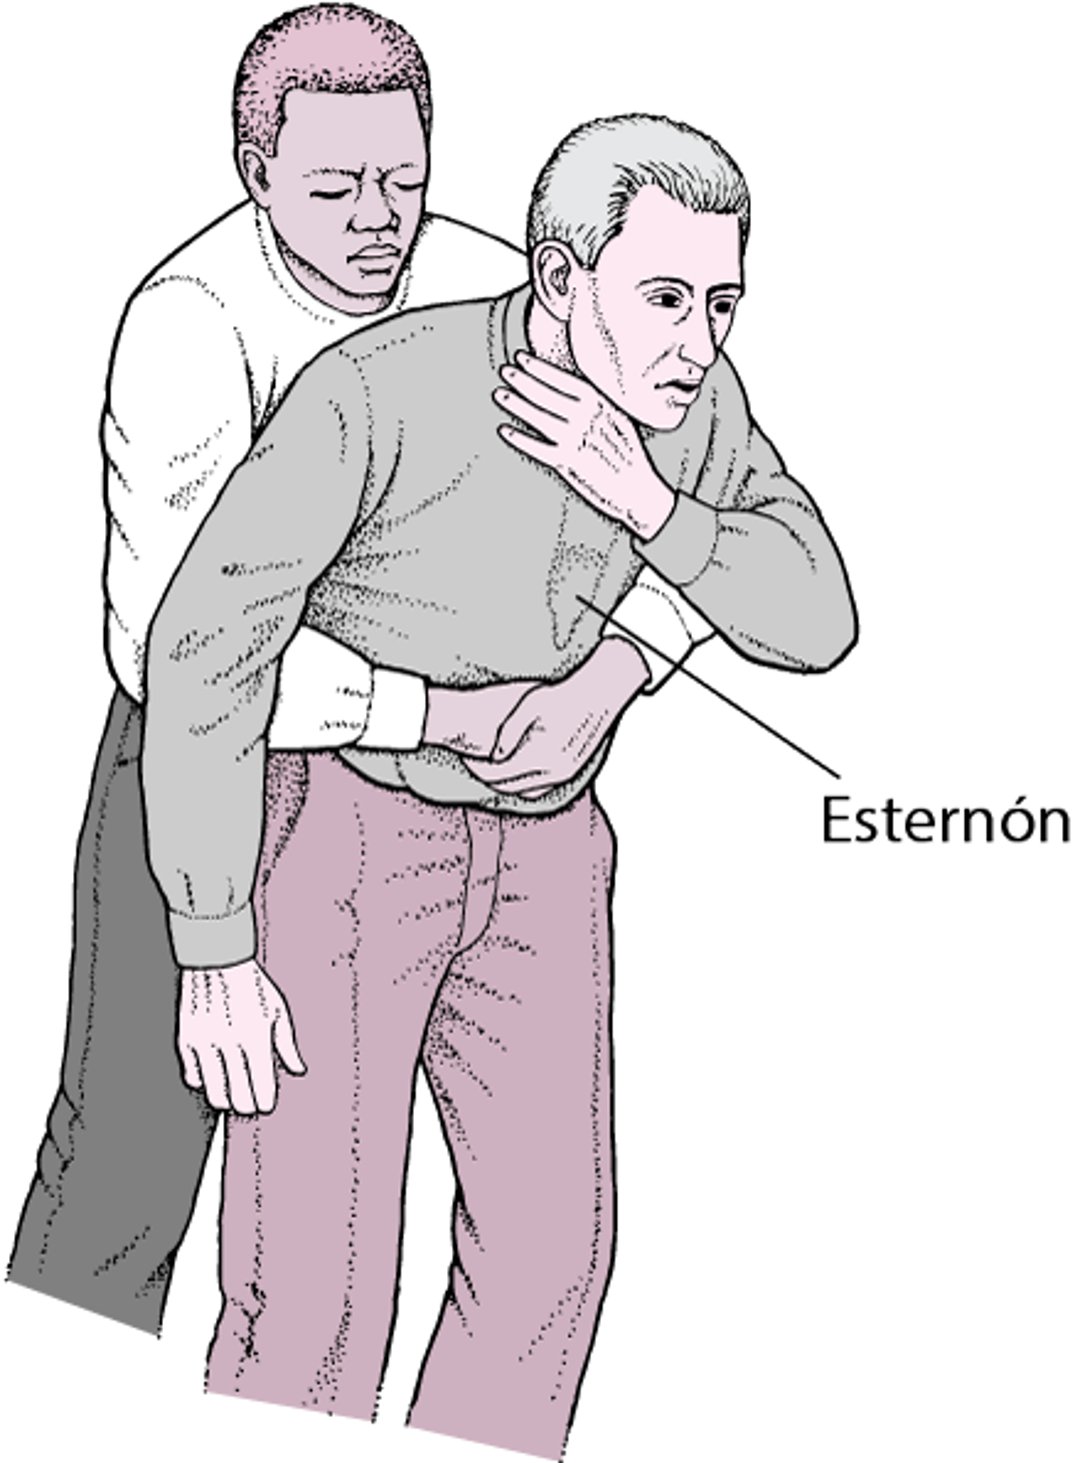 Realización de compresiones abdominales (maniobra de Heimlich)